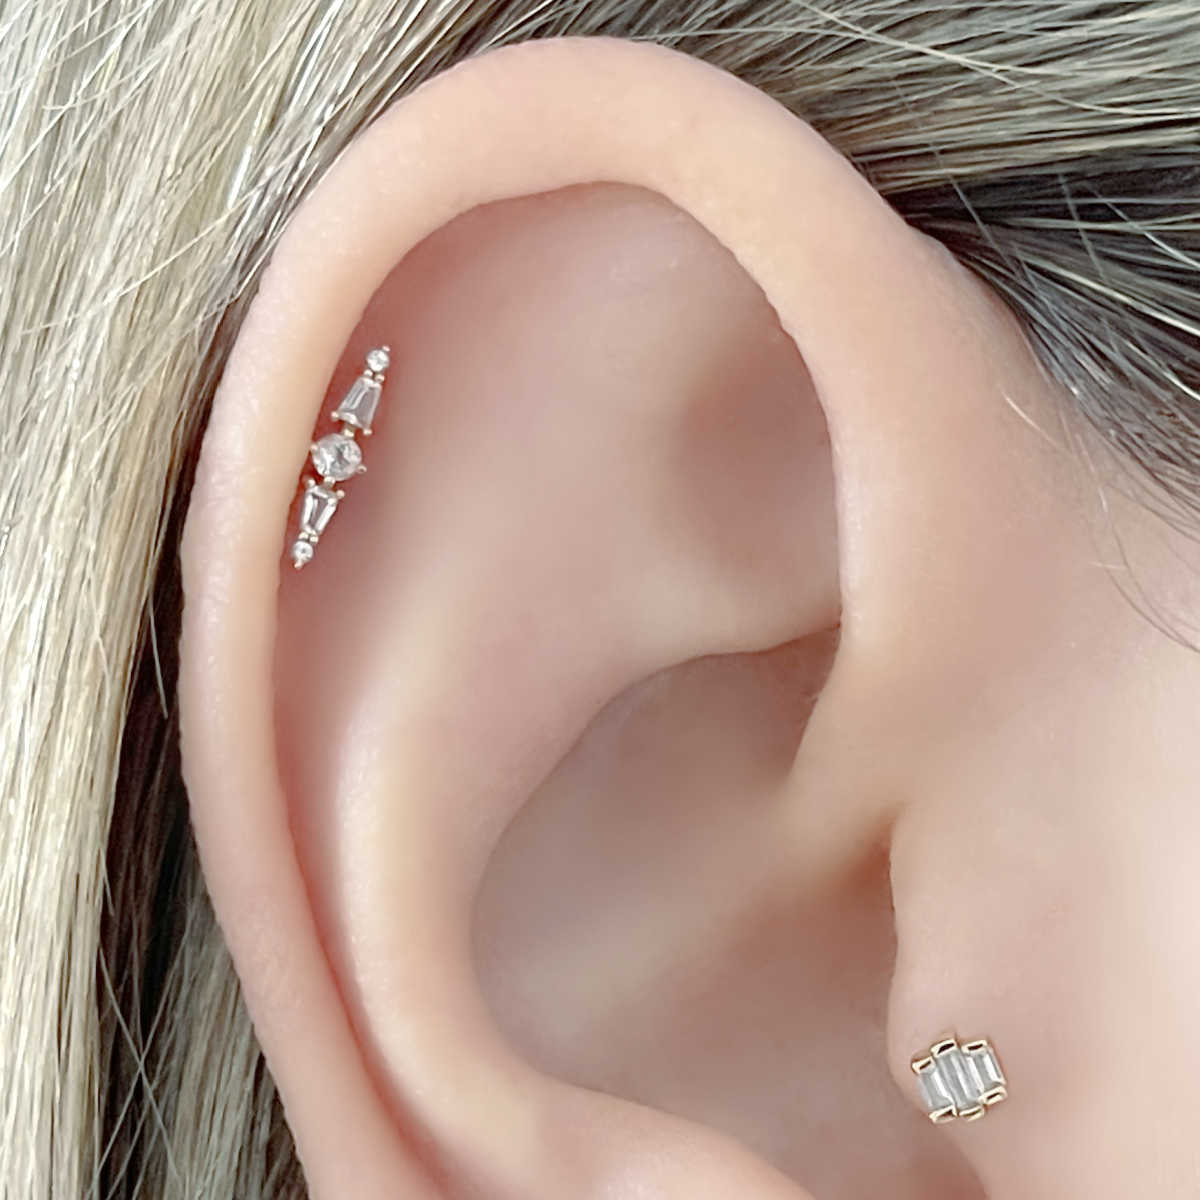 helix earrings studs